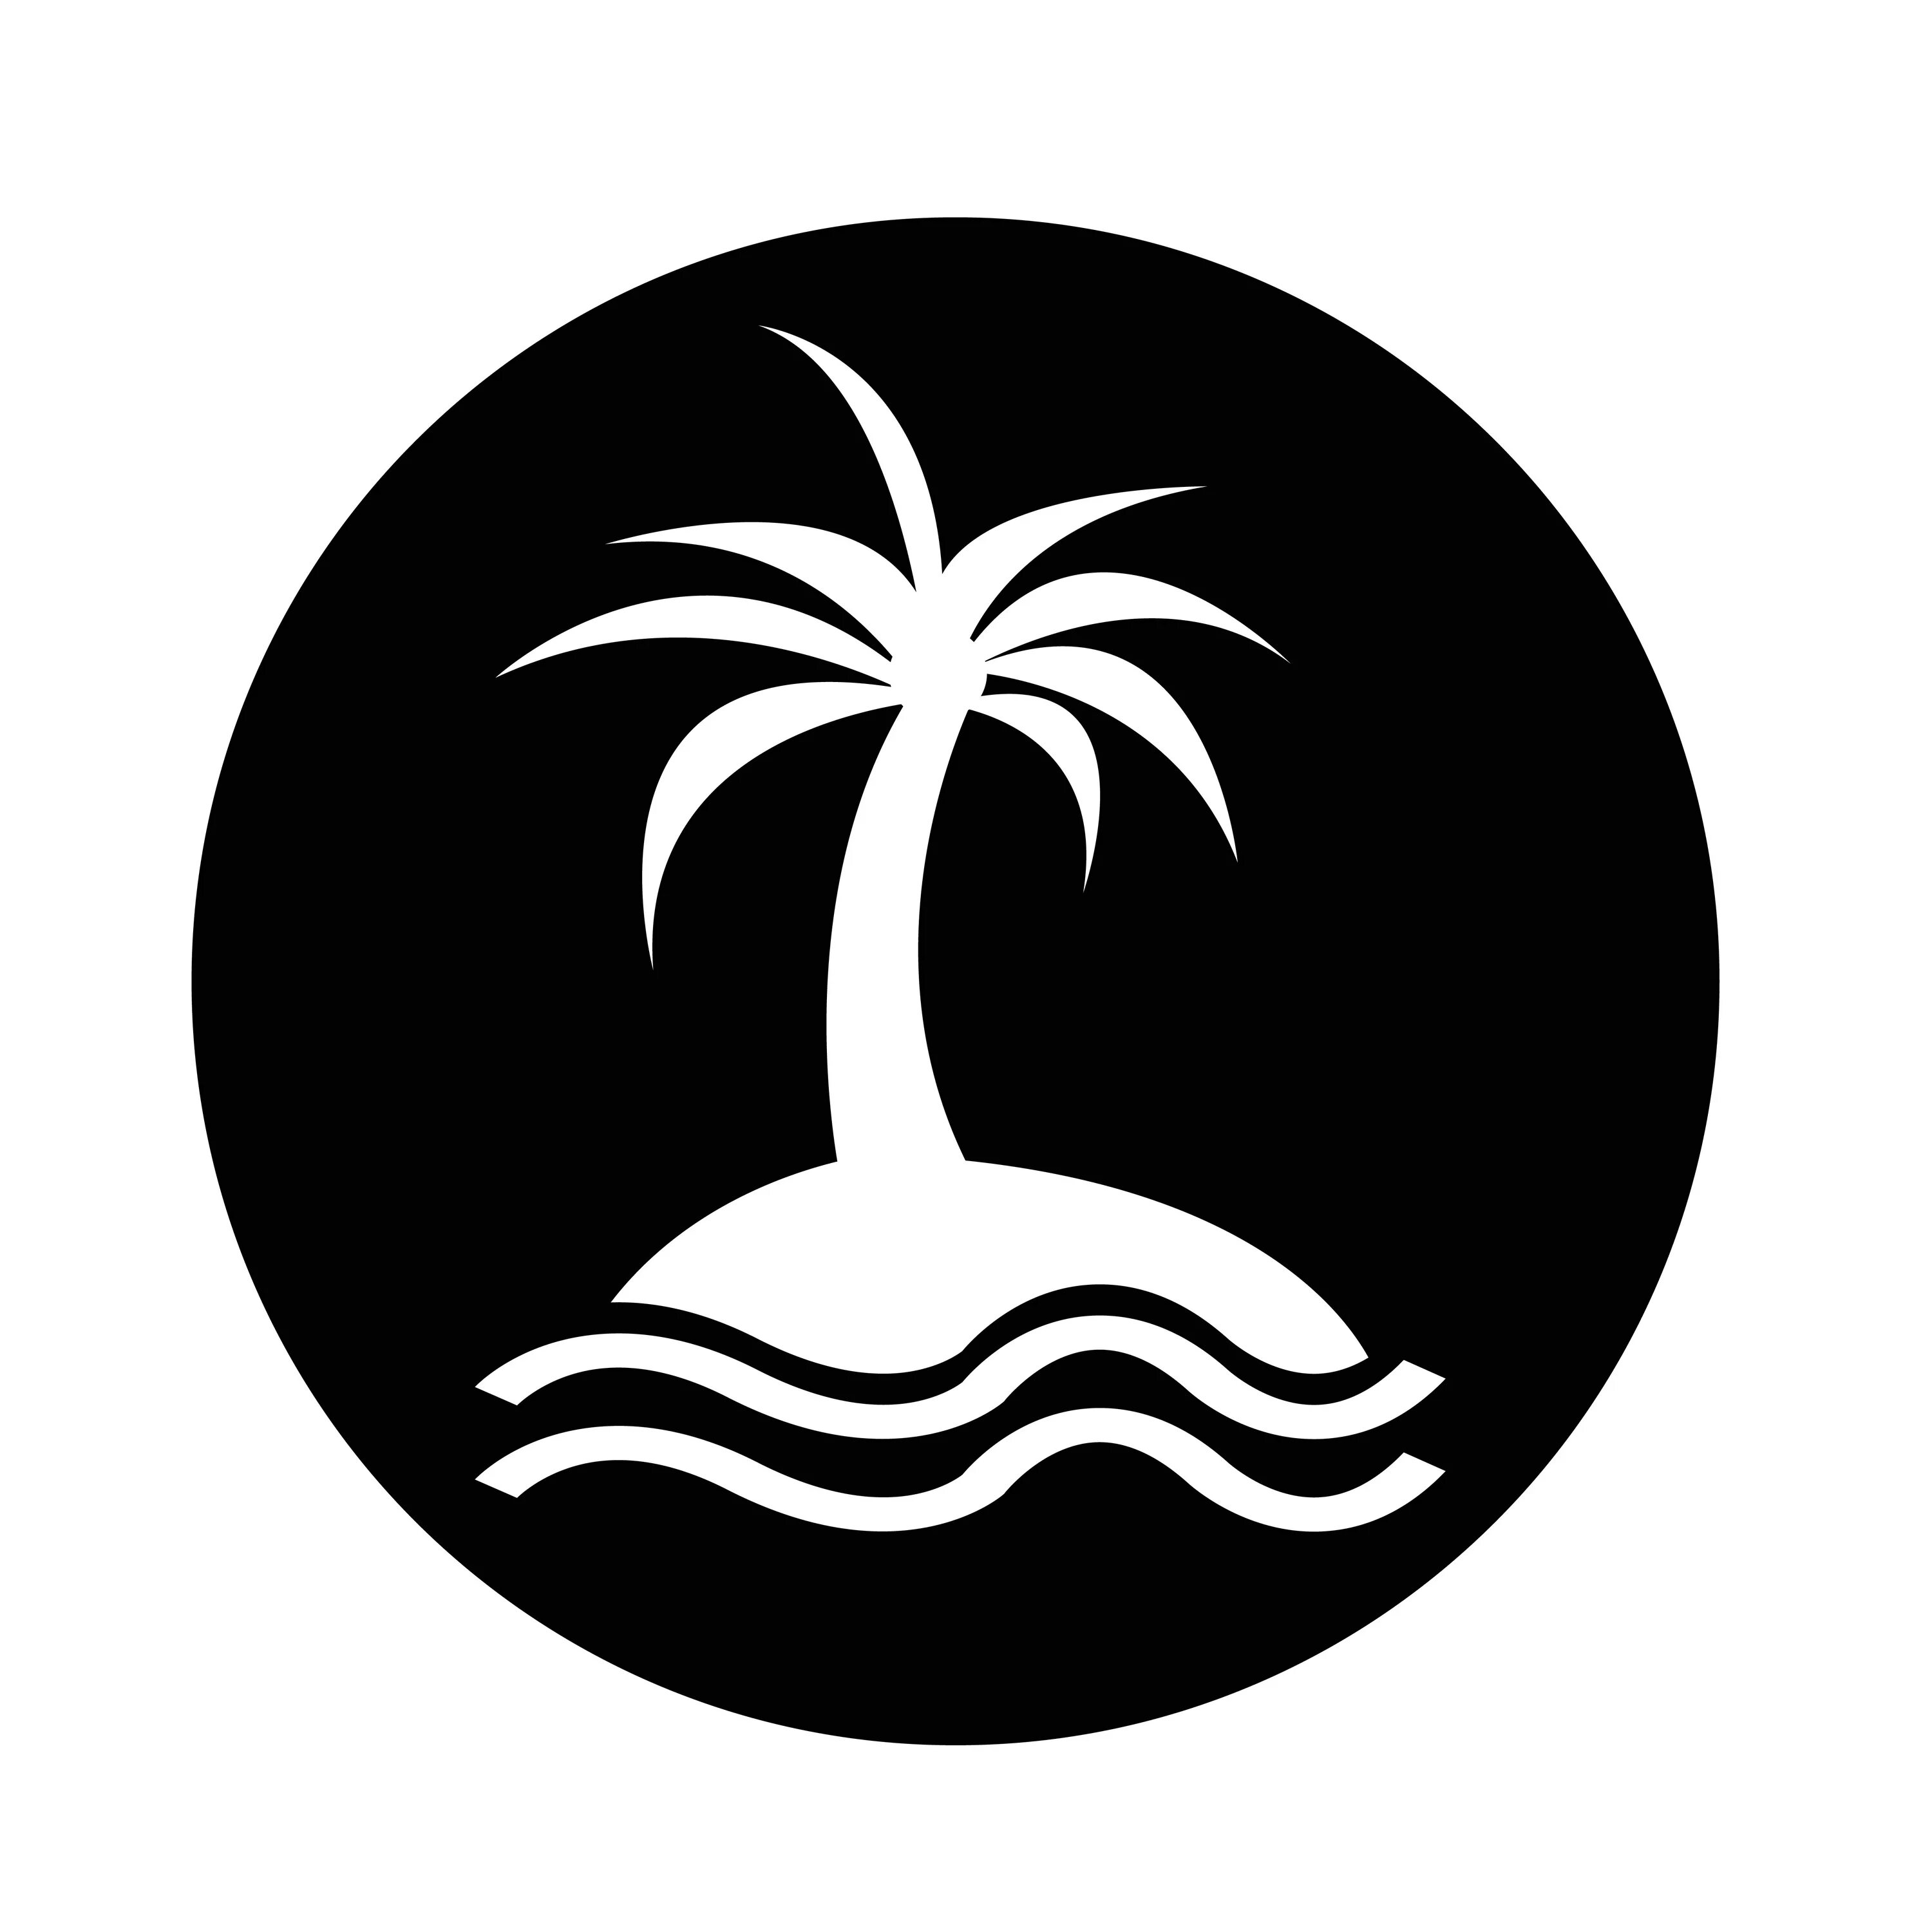 Значок острова. Пиктограмма остров. Остров и Пальма значок. Иконка острова с пальмой.